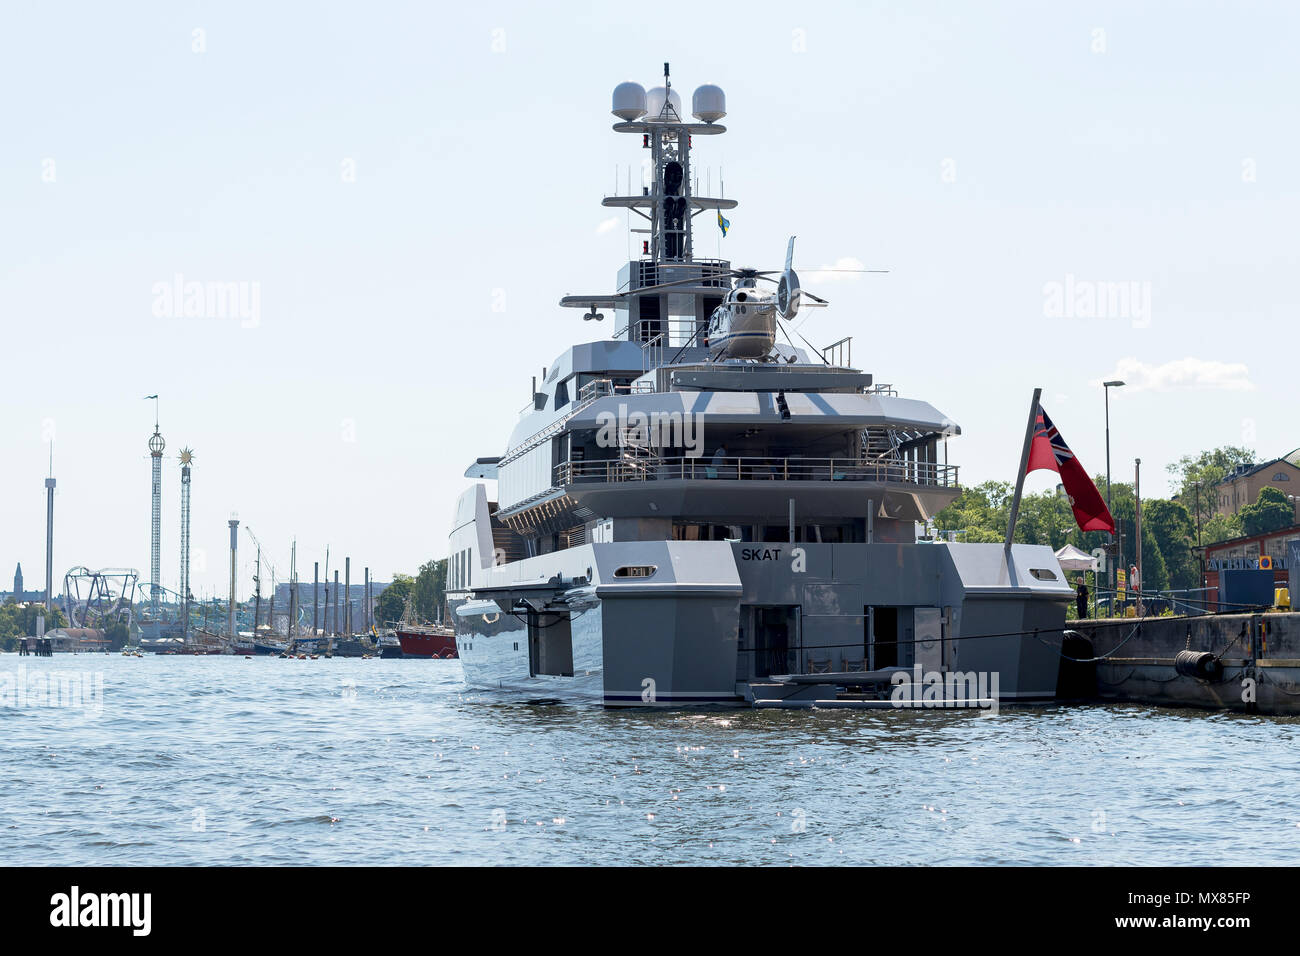 STOCKHOLM, Suède, le 2 juin 2018 : Le grand bateau yacht M/S'est lancé dans le port de Stockholm de Skat. Le navire est administré par l'ex-ingénieur Microsoft Char Banque D'Images